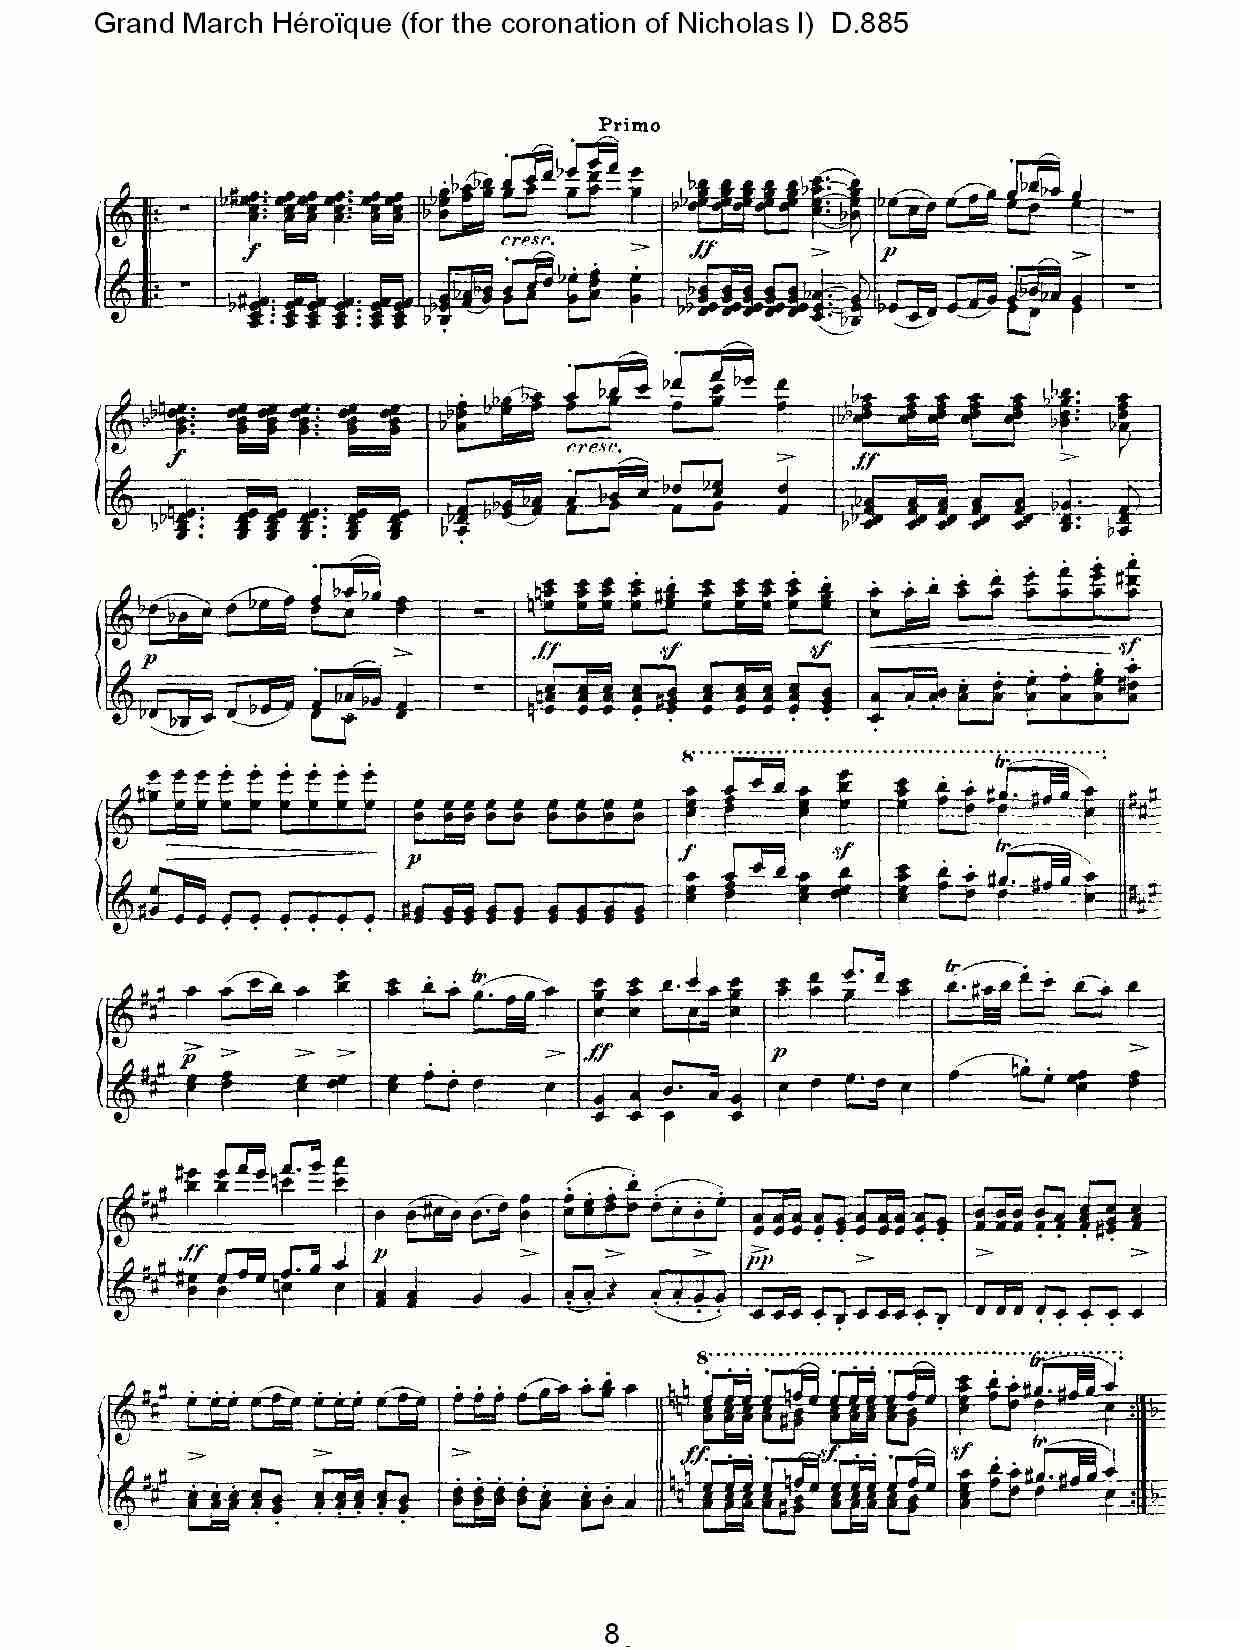 豪华进行曲（为尼古拉斯一世加冕礼而作)D.88）钢琴曲谱（图8）